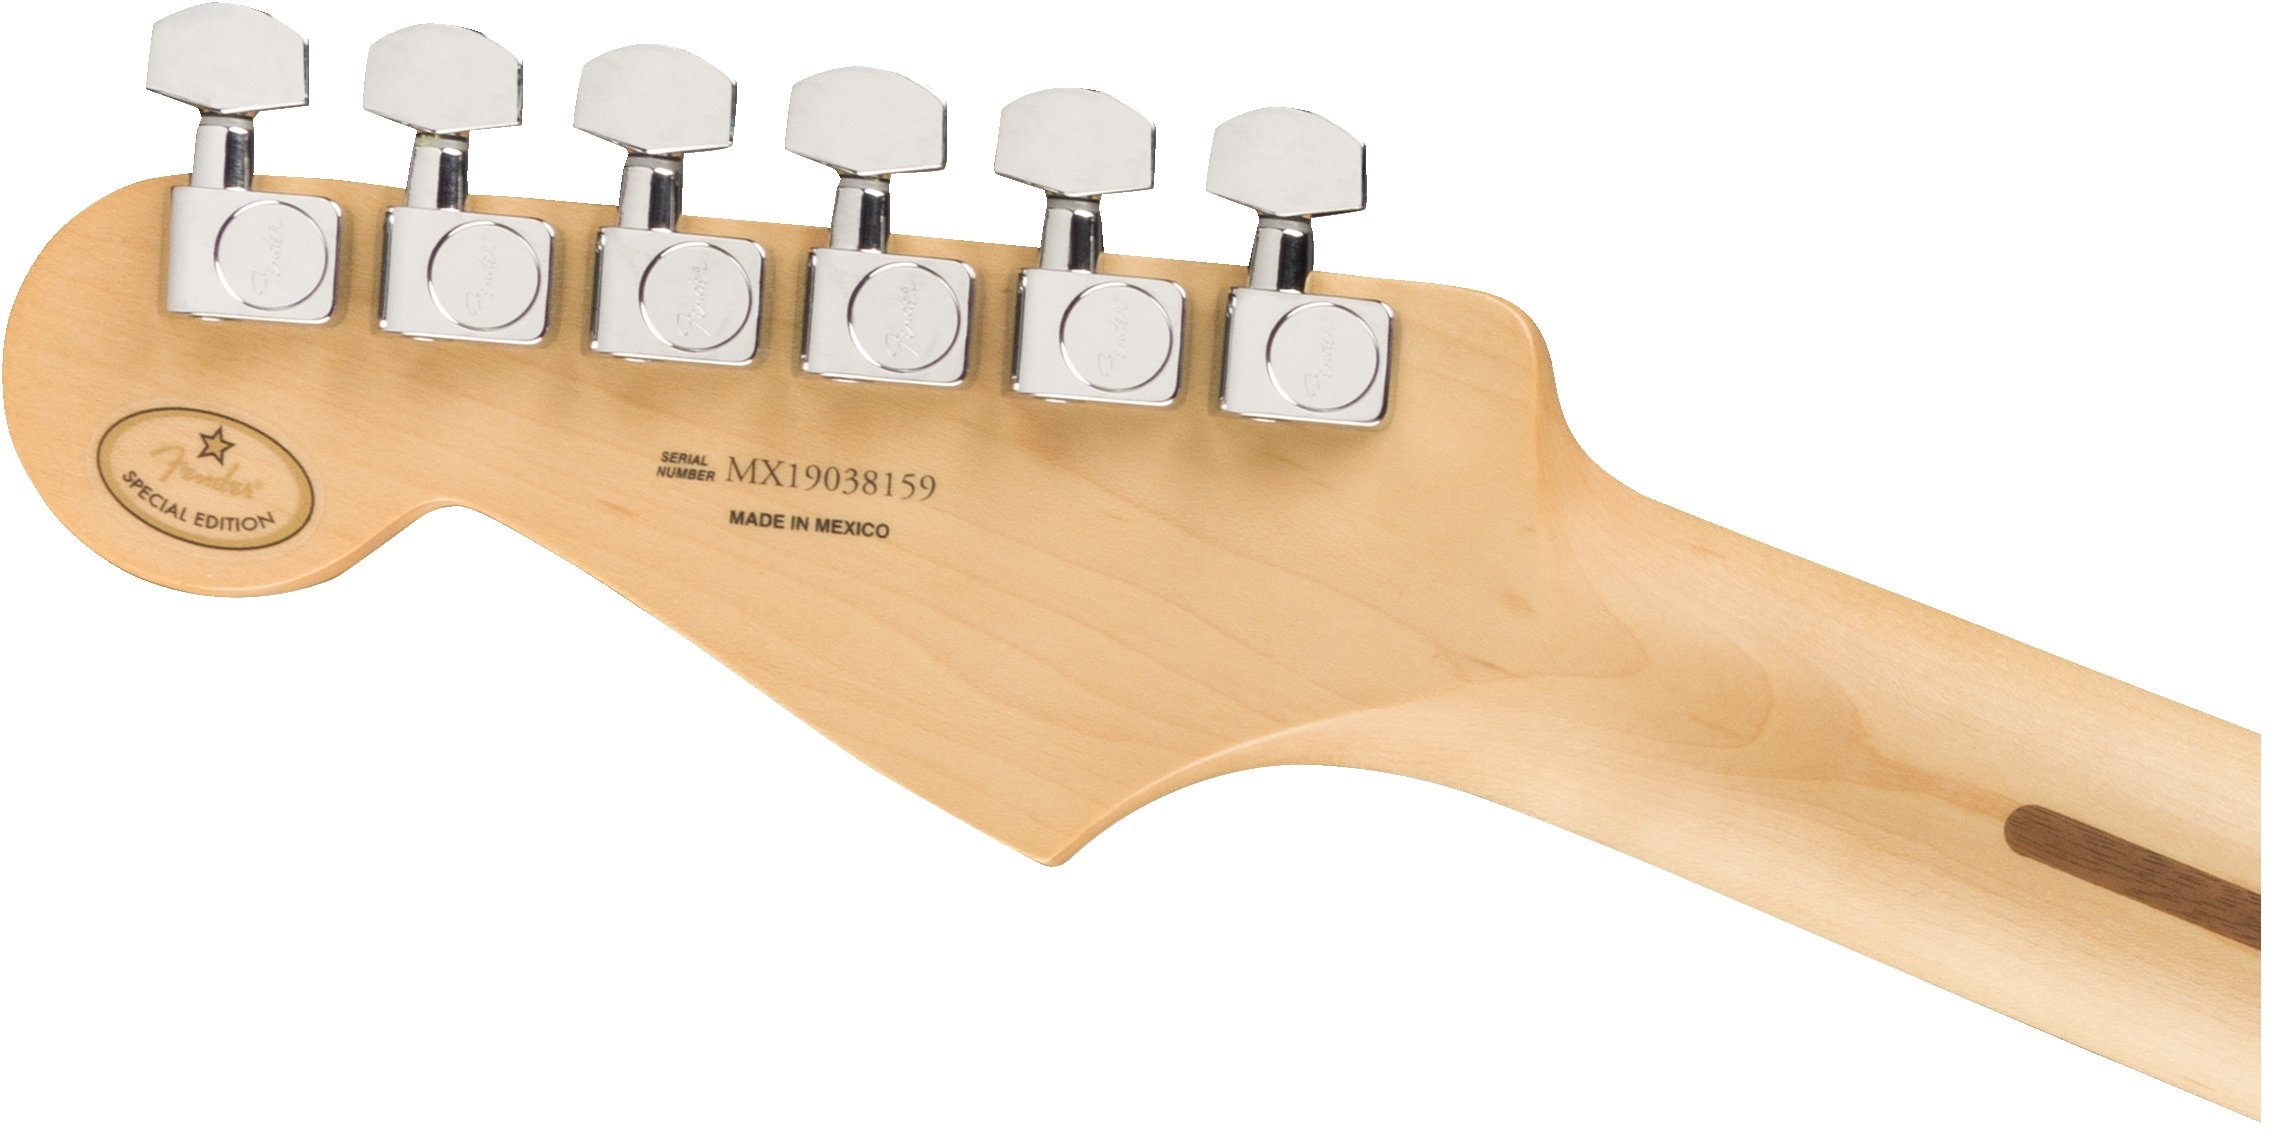 Fender Strat Player Ltd Mex 3s Trem Pf - Fiesta Red - Elektrische gitaar in Str-vorm - Variation 5